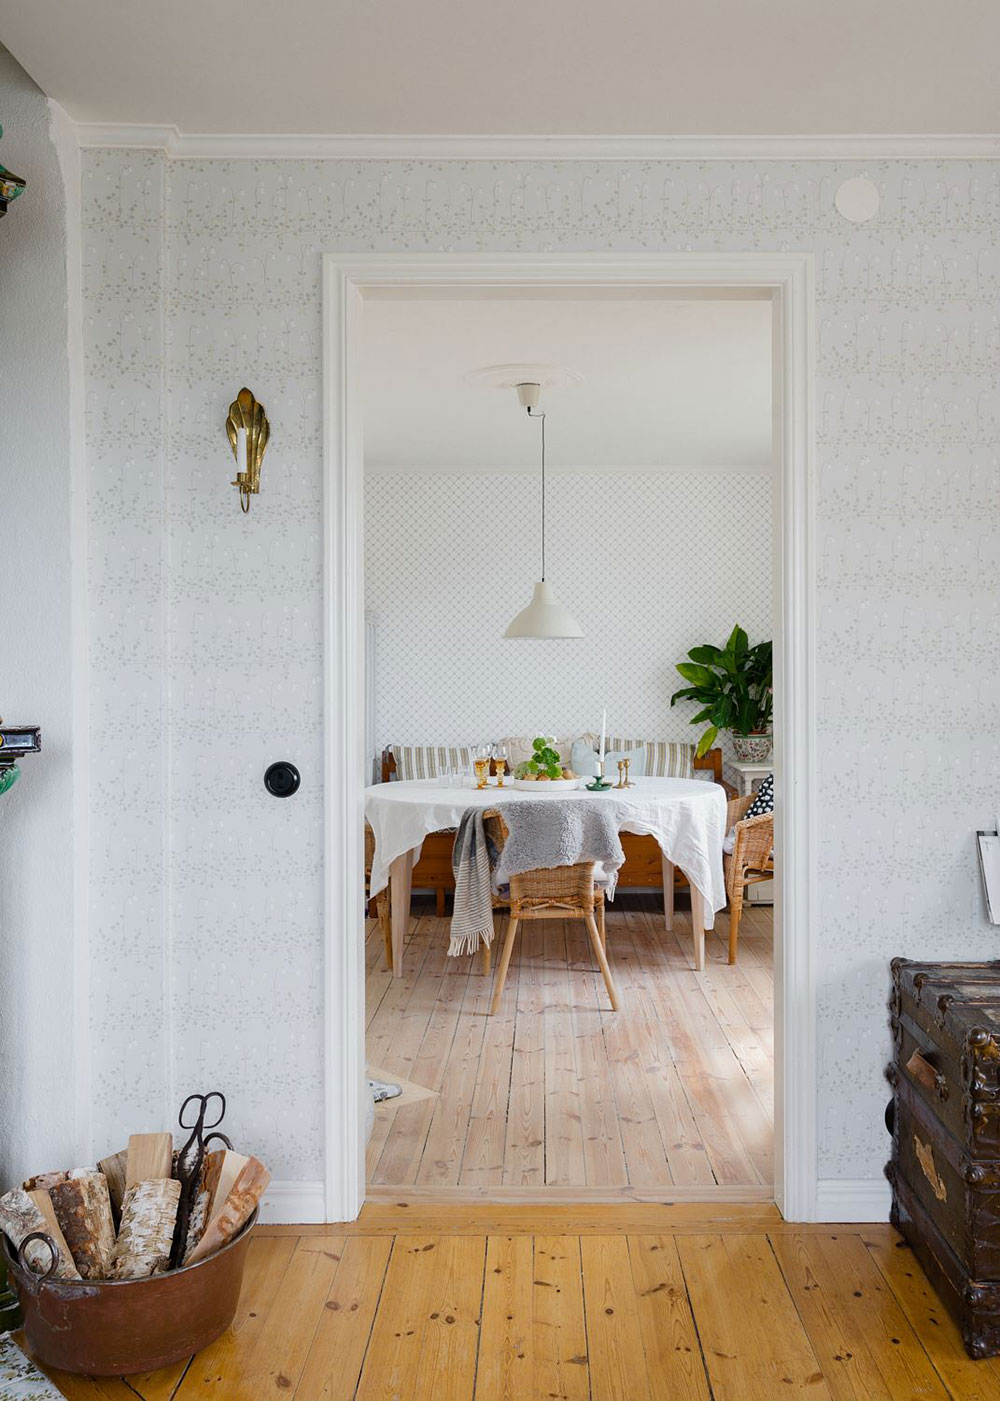 Очаровательная желтая дача с синей кухней в Швеции